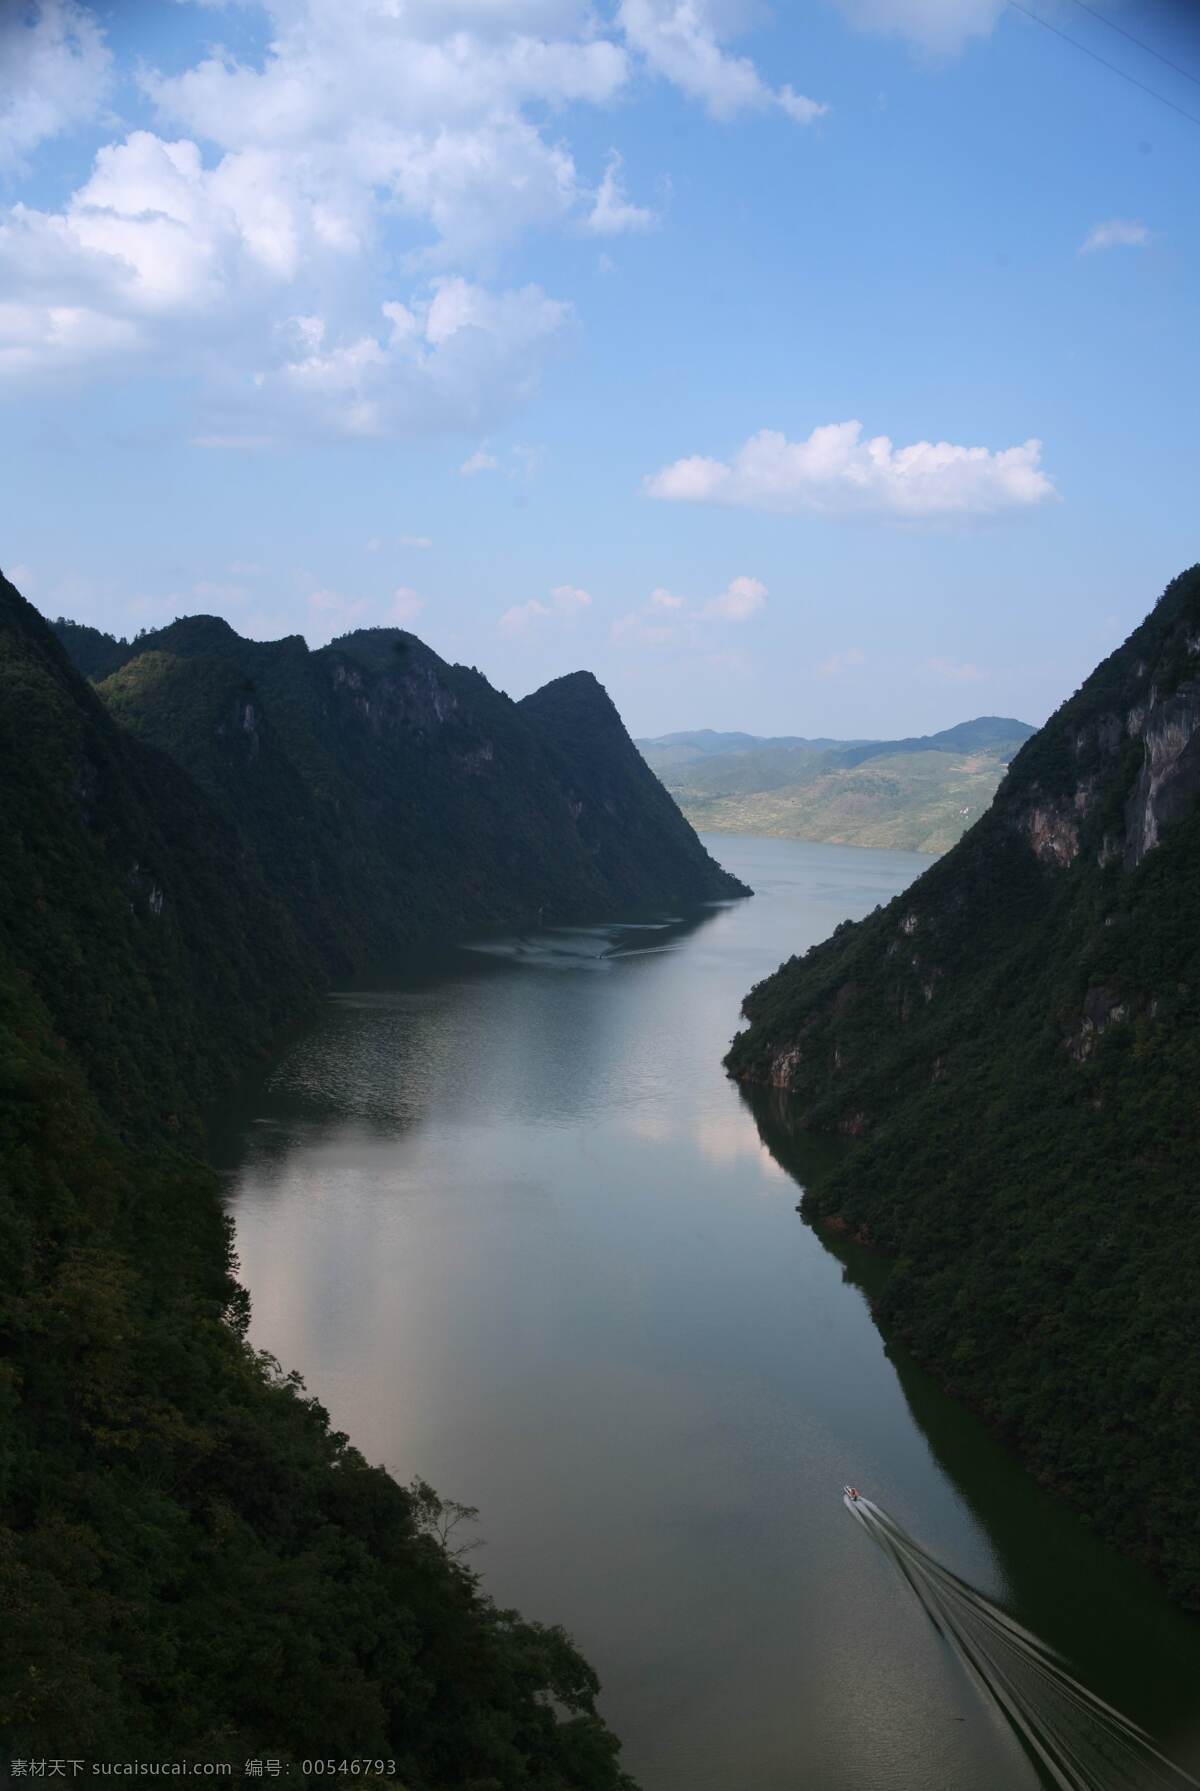 乌江 江界 河 风光 国家 风景 名胜区 山峦 水面 倒影 蓝天 白云 山水风景 自然景观